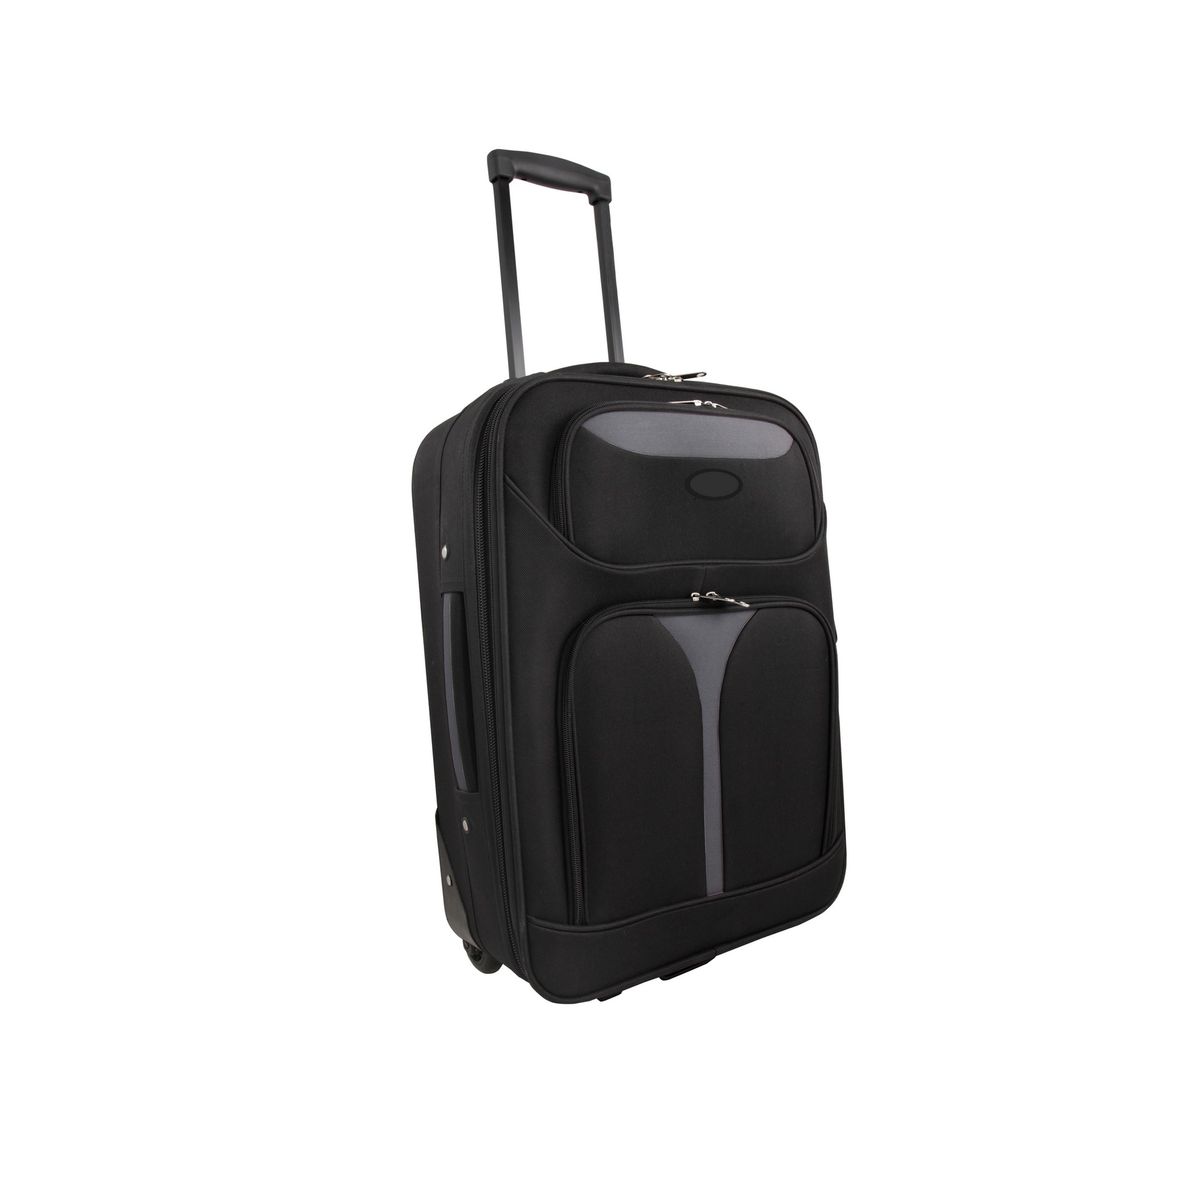 Soft Case Luggage Bag - Black/Grey